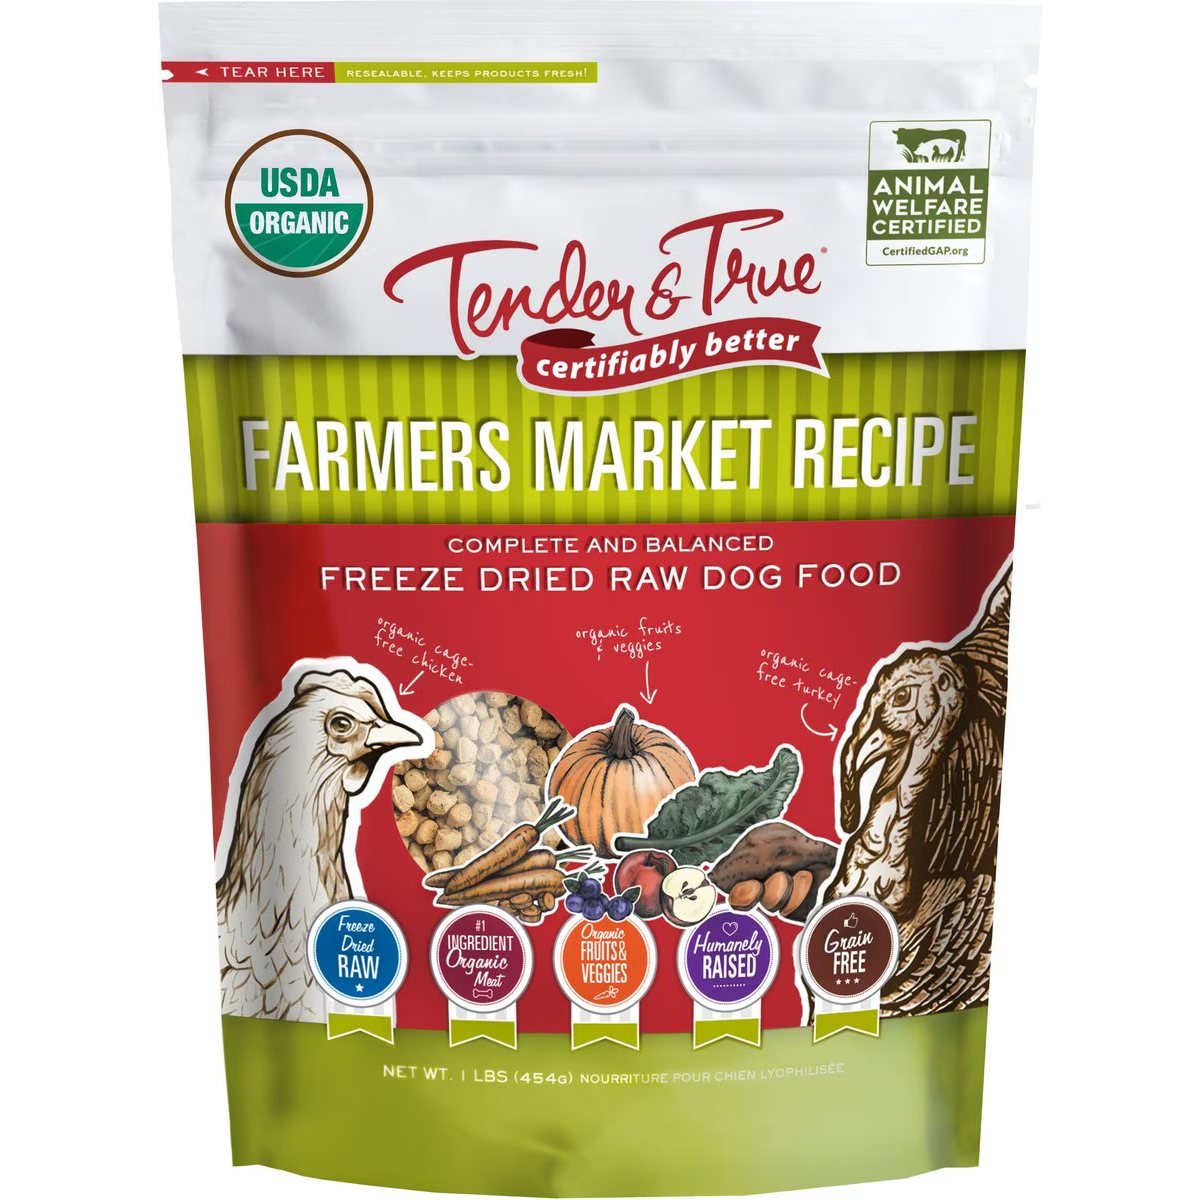 Tender & True Freeze-Dried Raw Dog Food